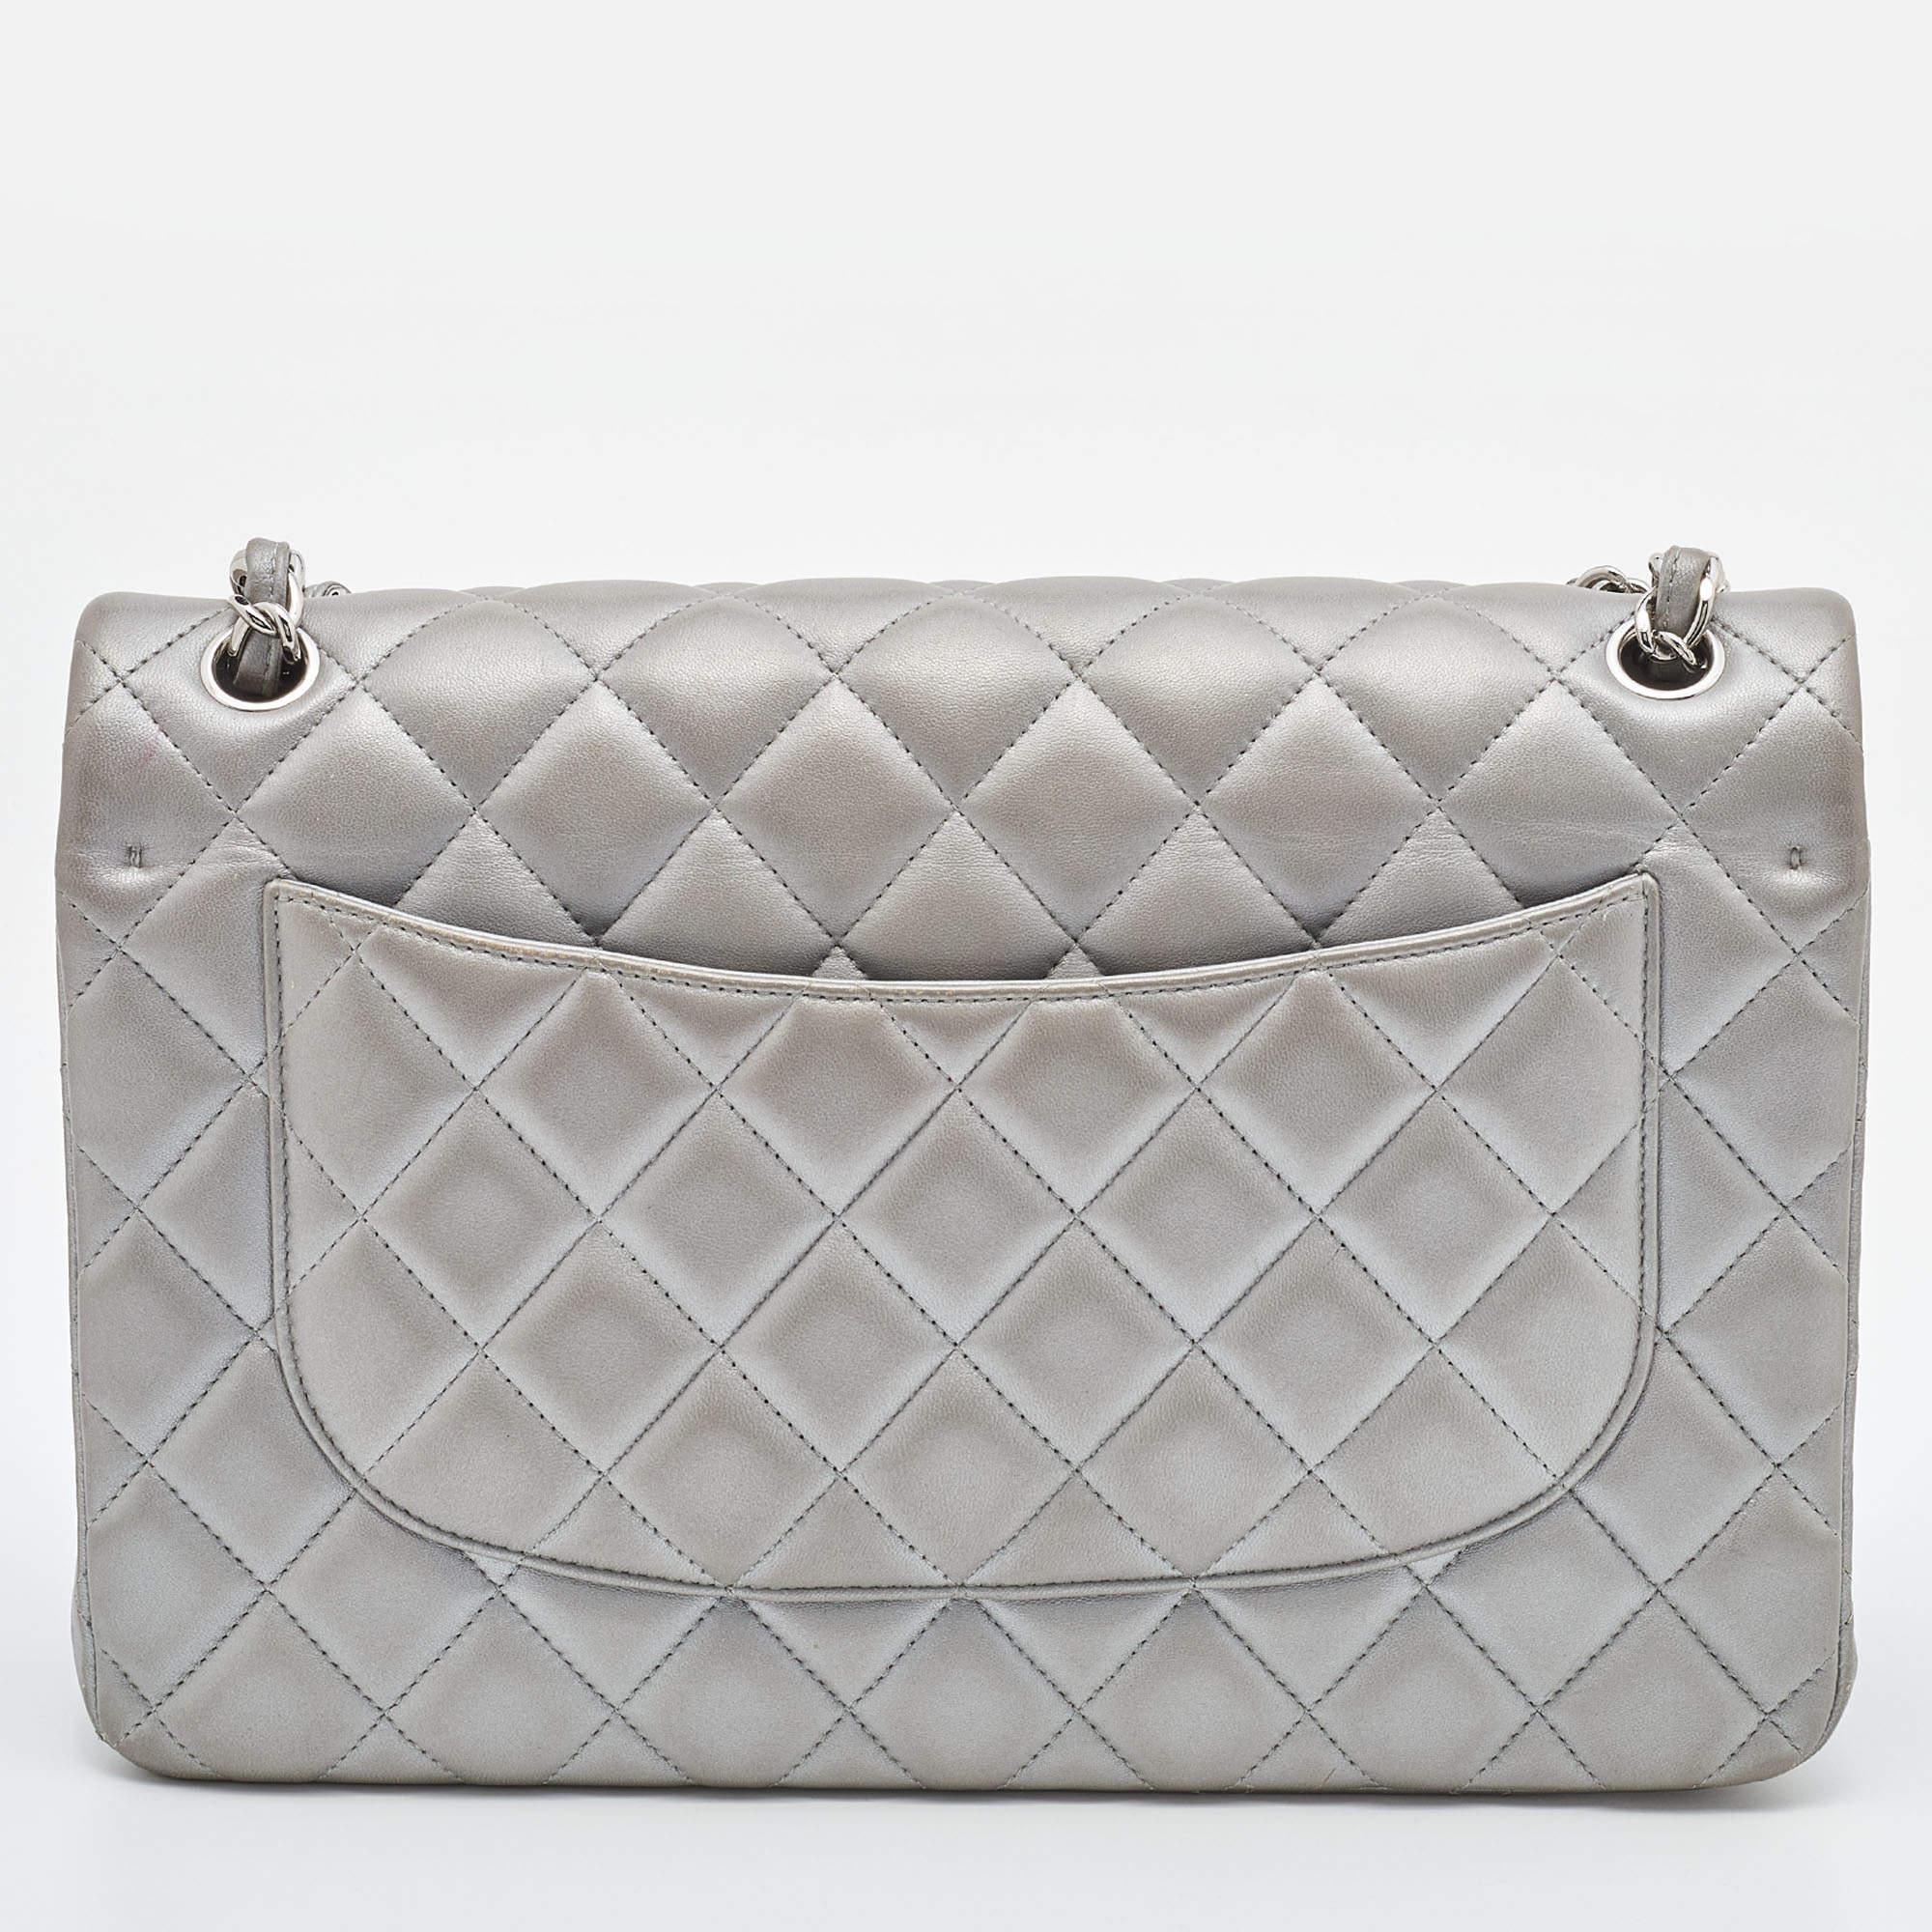 Die klassischen Designs von Chanel werden Saison für Saison neu interpretiert und behalten dabei ihren klassischen Glamour und ihre bemerkenswerten Silhouetten. Diese Tasche mit doppeltem Überschlag stammt aus einer der berühmtesten Collection'S.